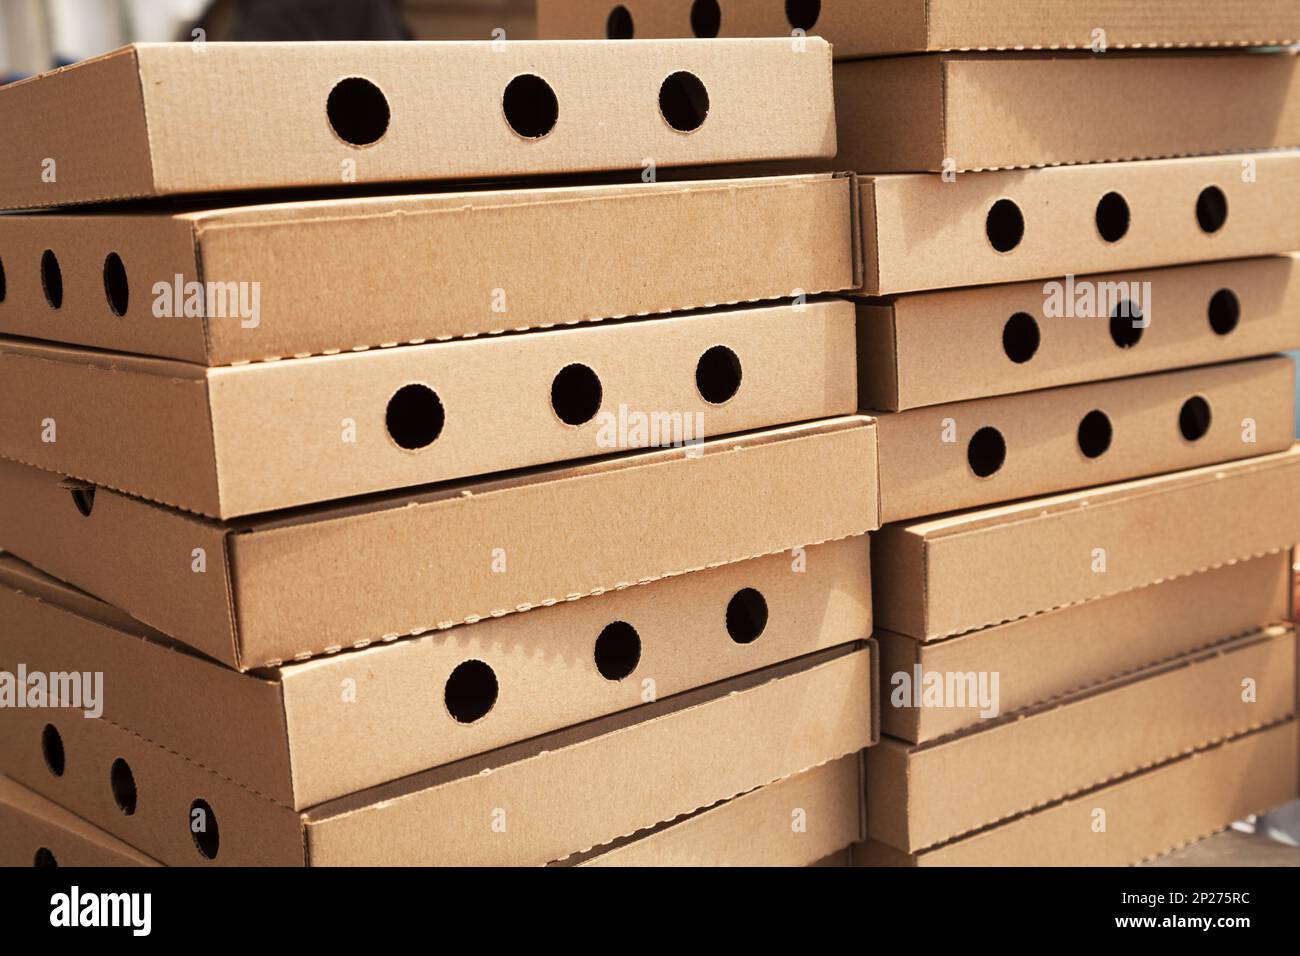 Deux piles de nouvelles boîtes à pizza fermé avec des trous. De nombreux cartons d'aliments vides télévision dans une pile. Beaucoup d'emballage brun dans un restaurant à emporter Banque D'Images